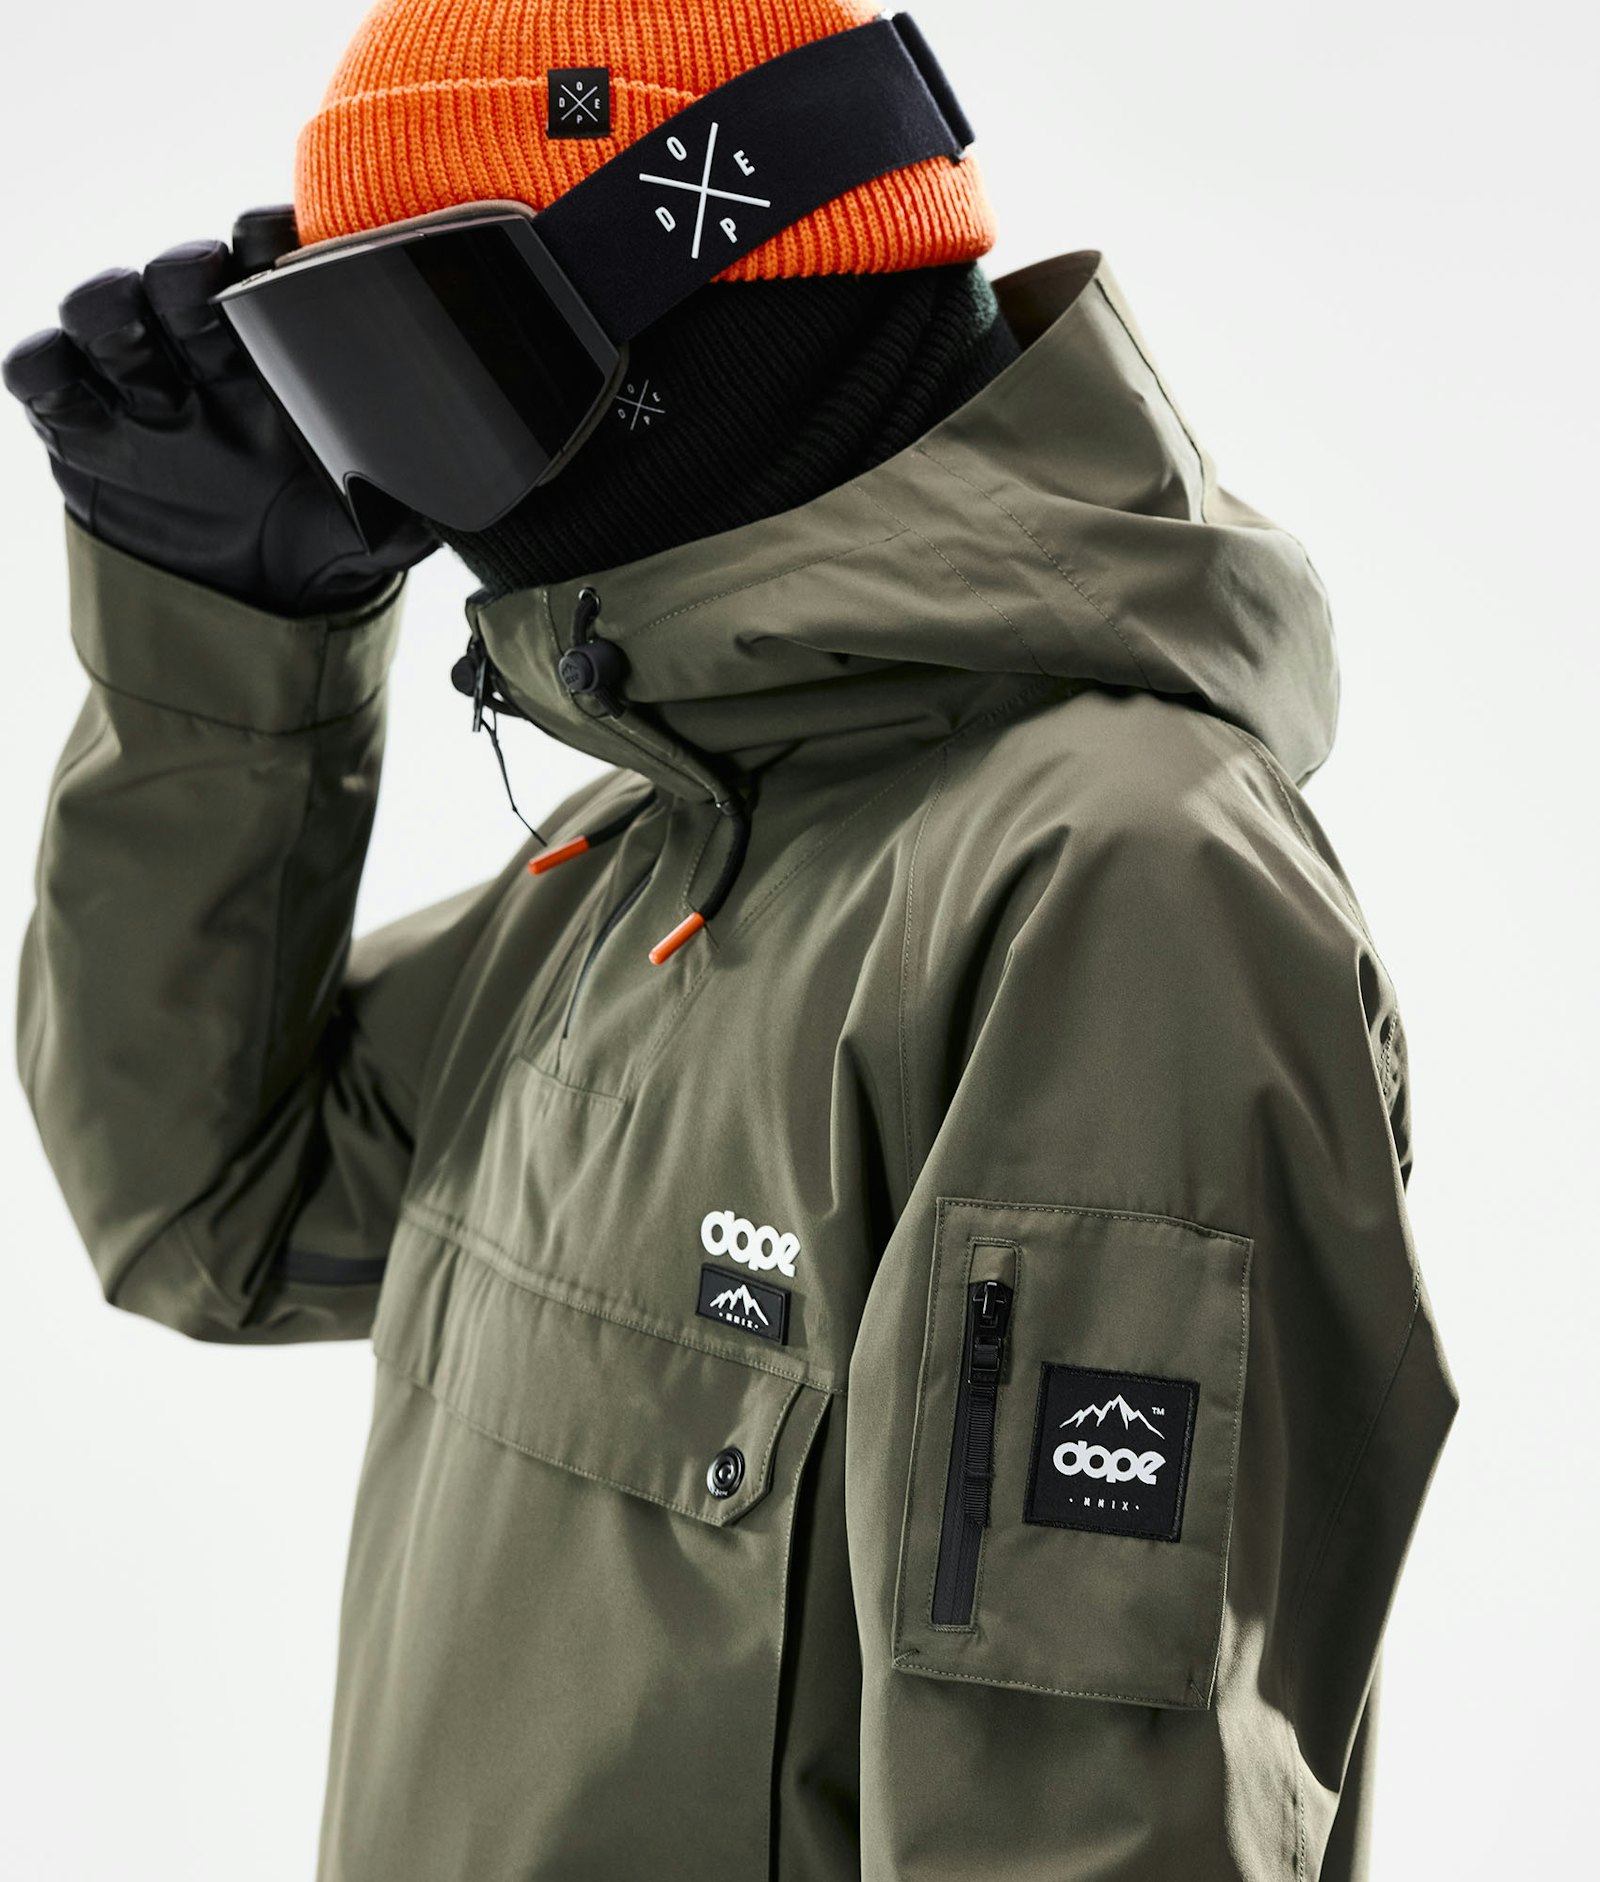 Annok 2021 Veste Snowboard Homme Olive Green/Black